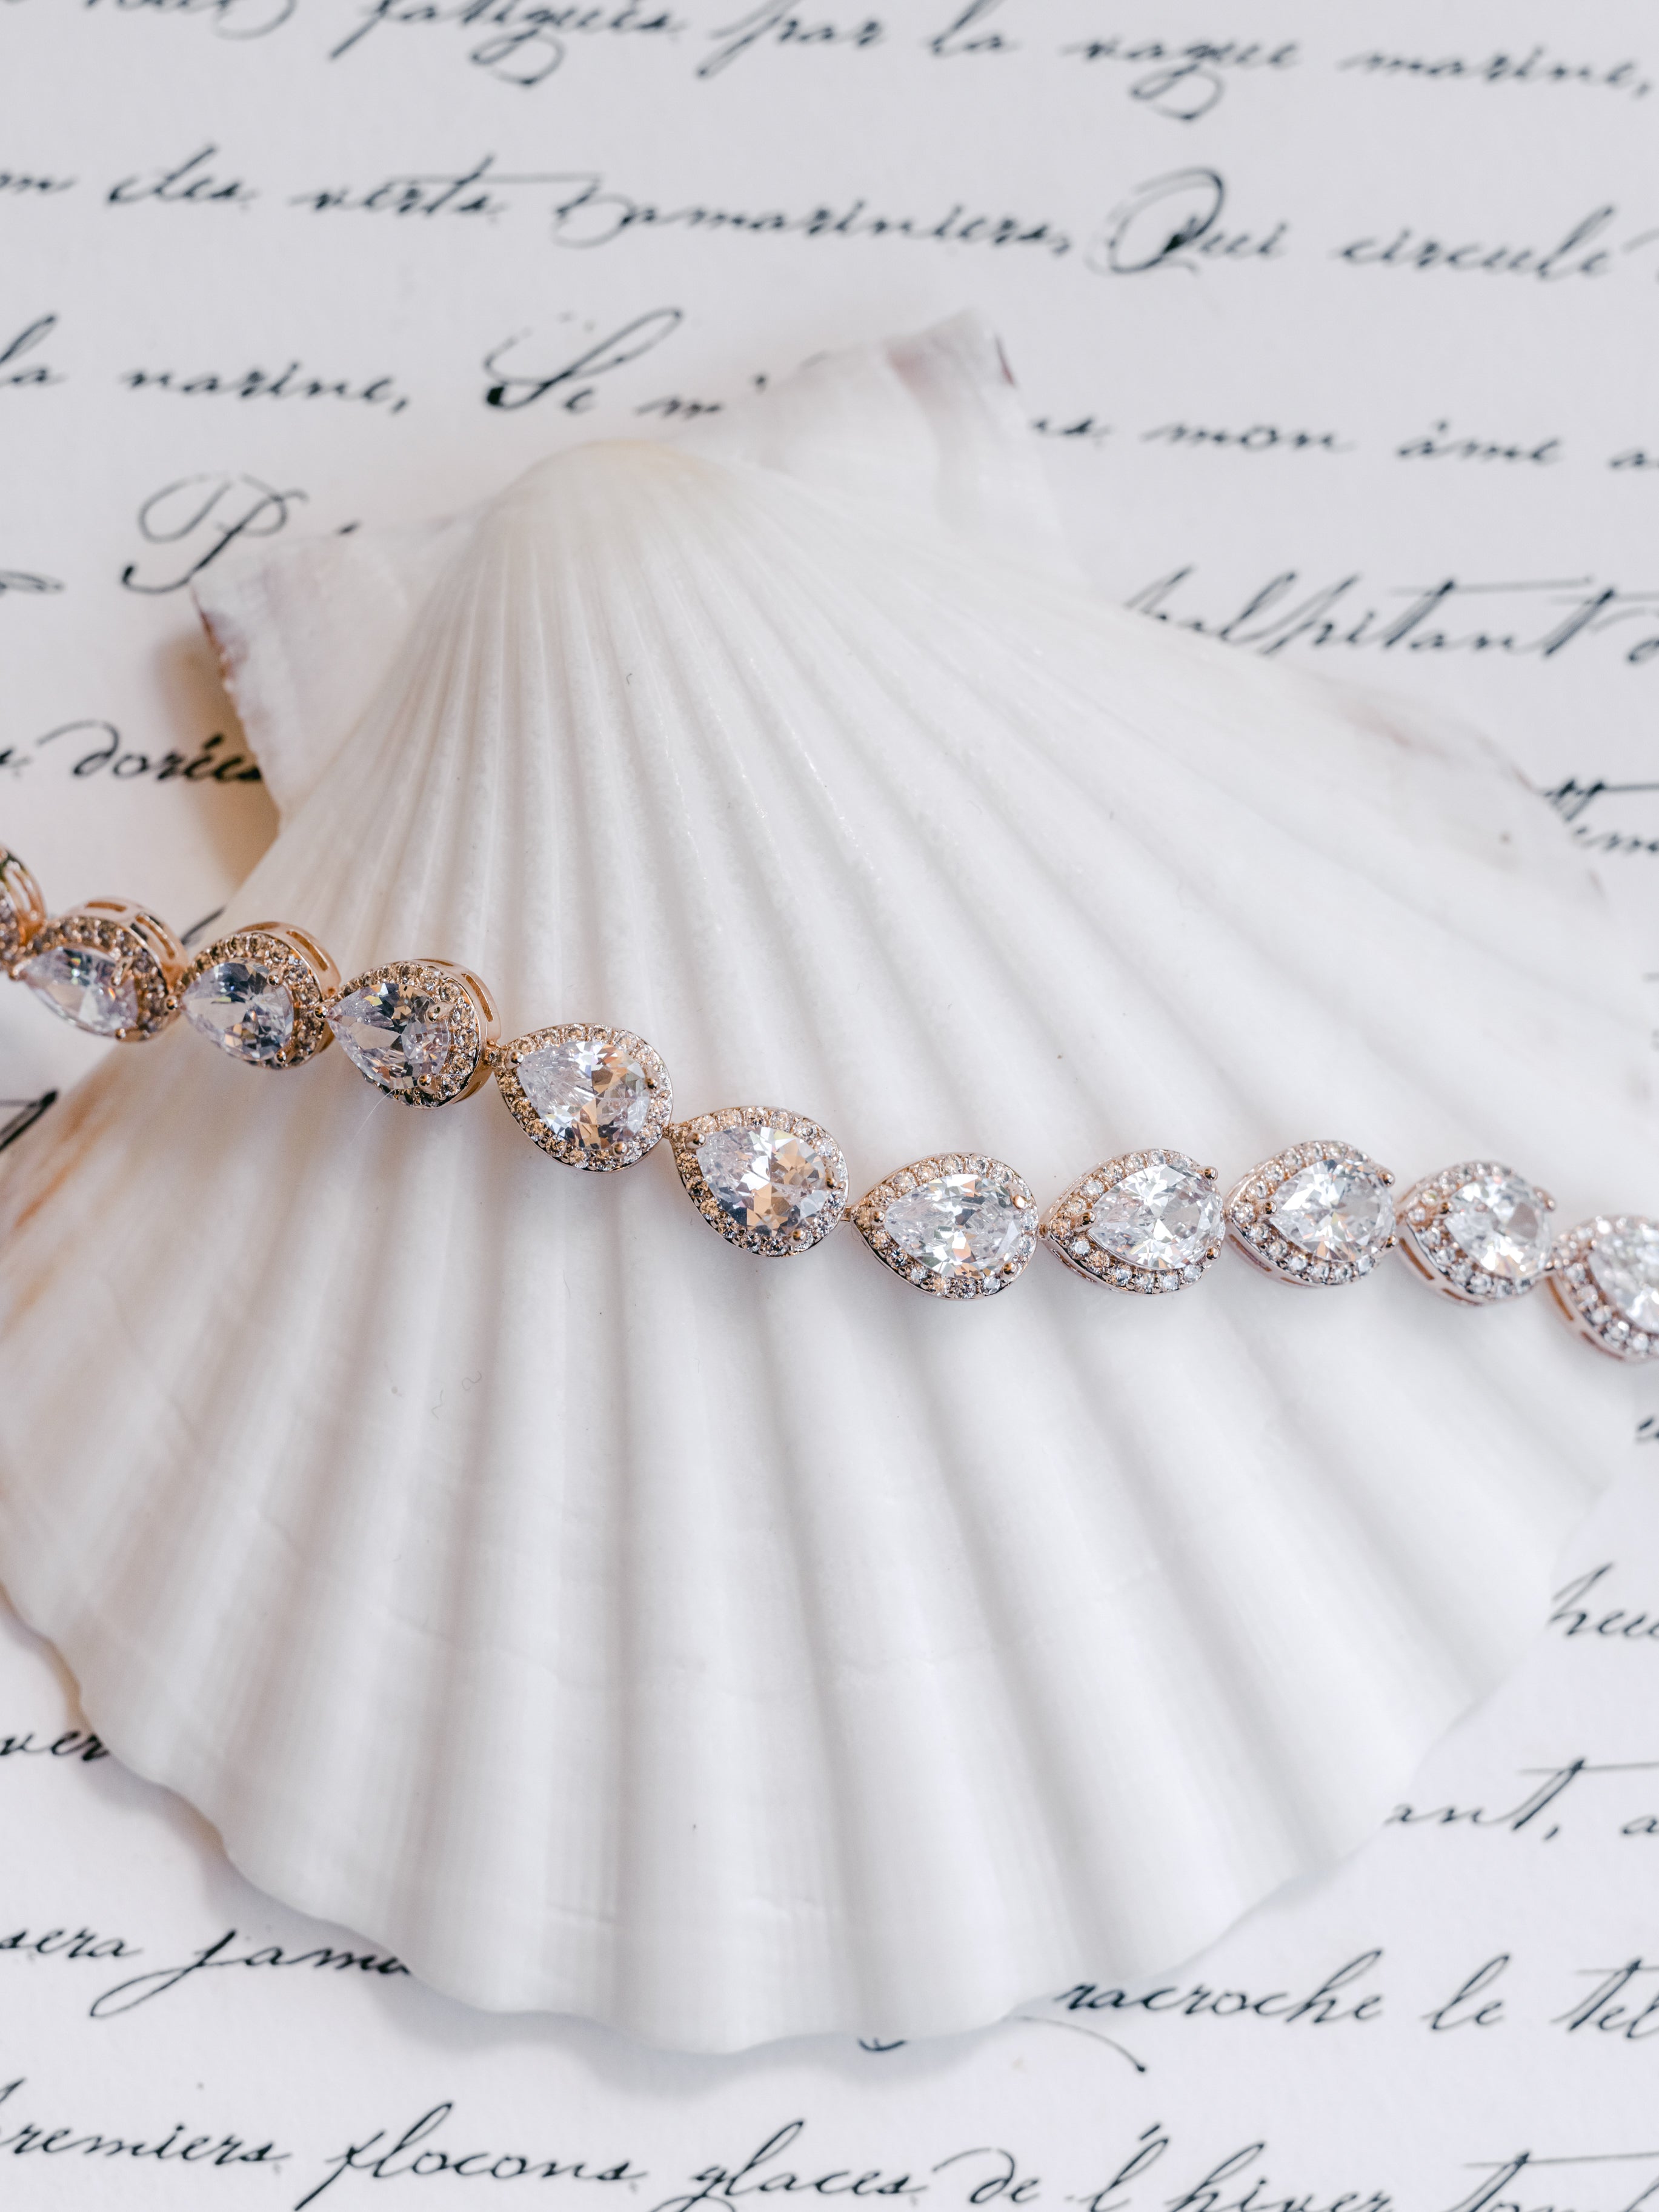 Gussie Crystal Bridal Bracelet  Bridal Headpieces  Wedding Accessories   Bride La Boheme